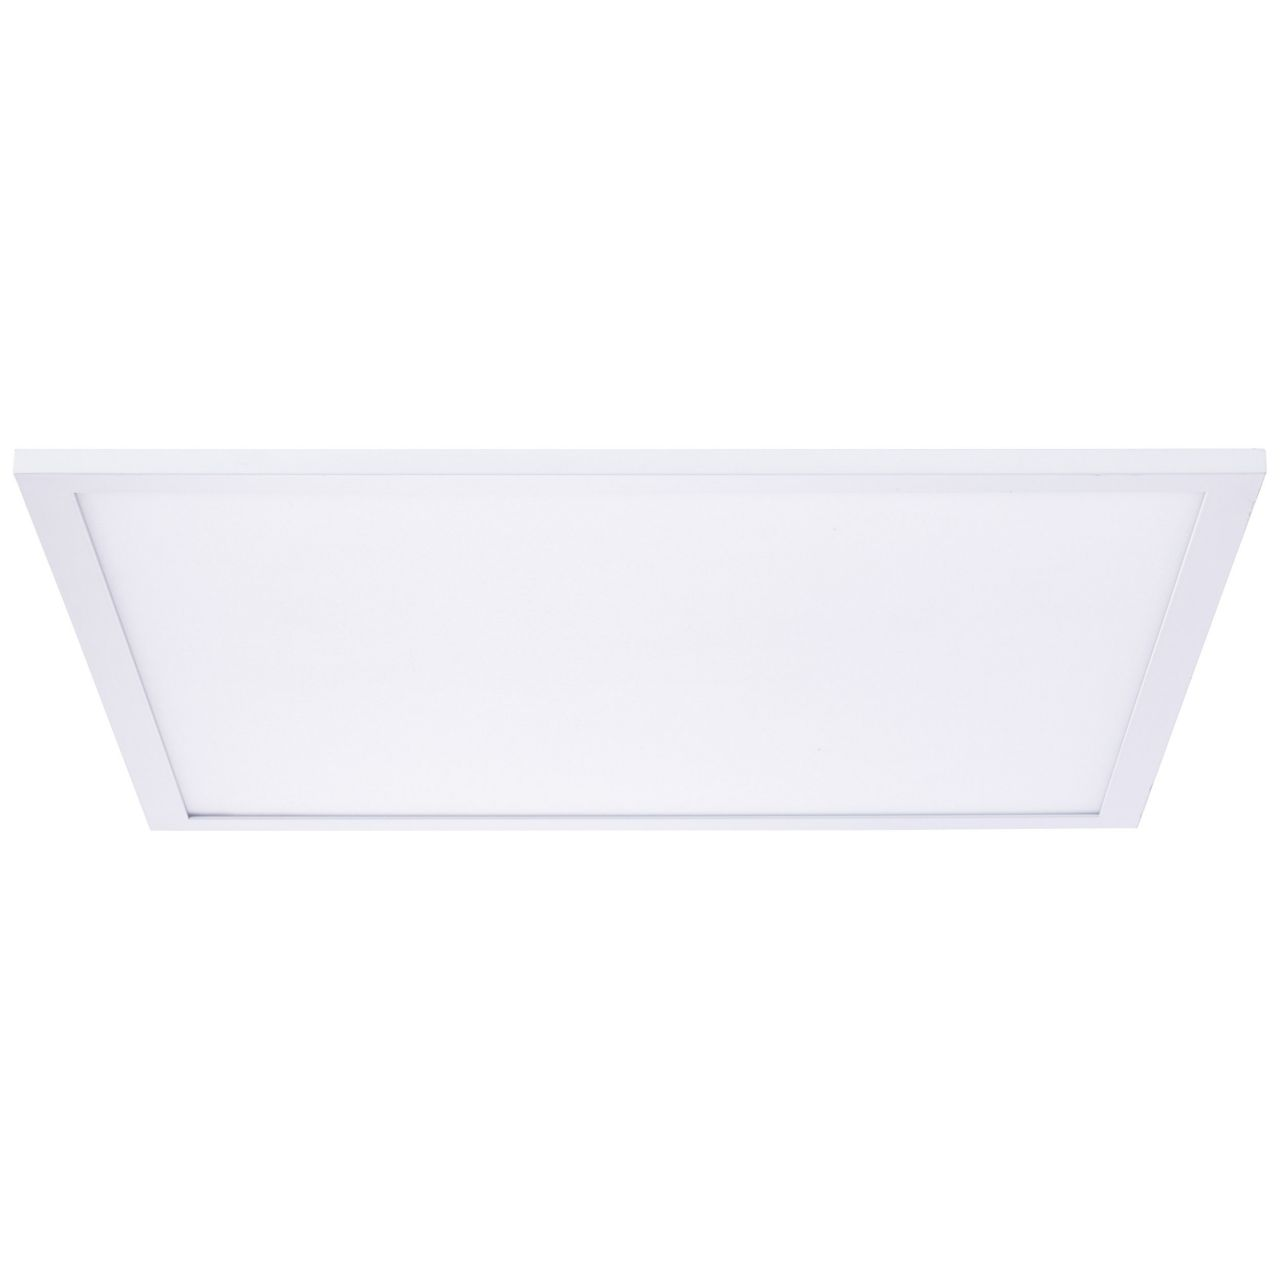 Lampe Buffi BRILLIANT weiß/kaltweiß Deckenaufbau-Paneel LED 40x40cm